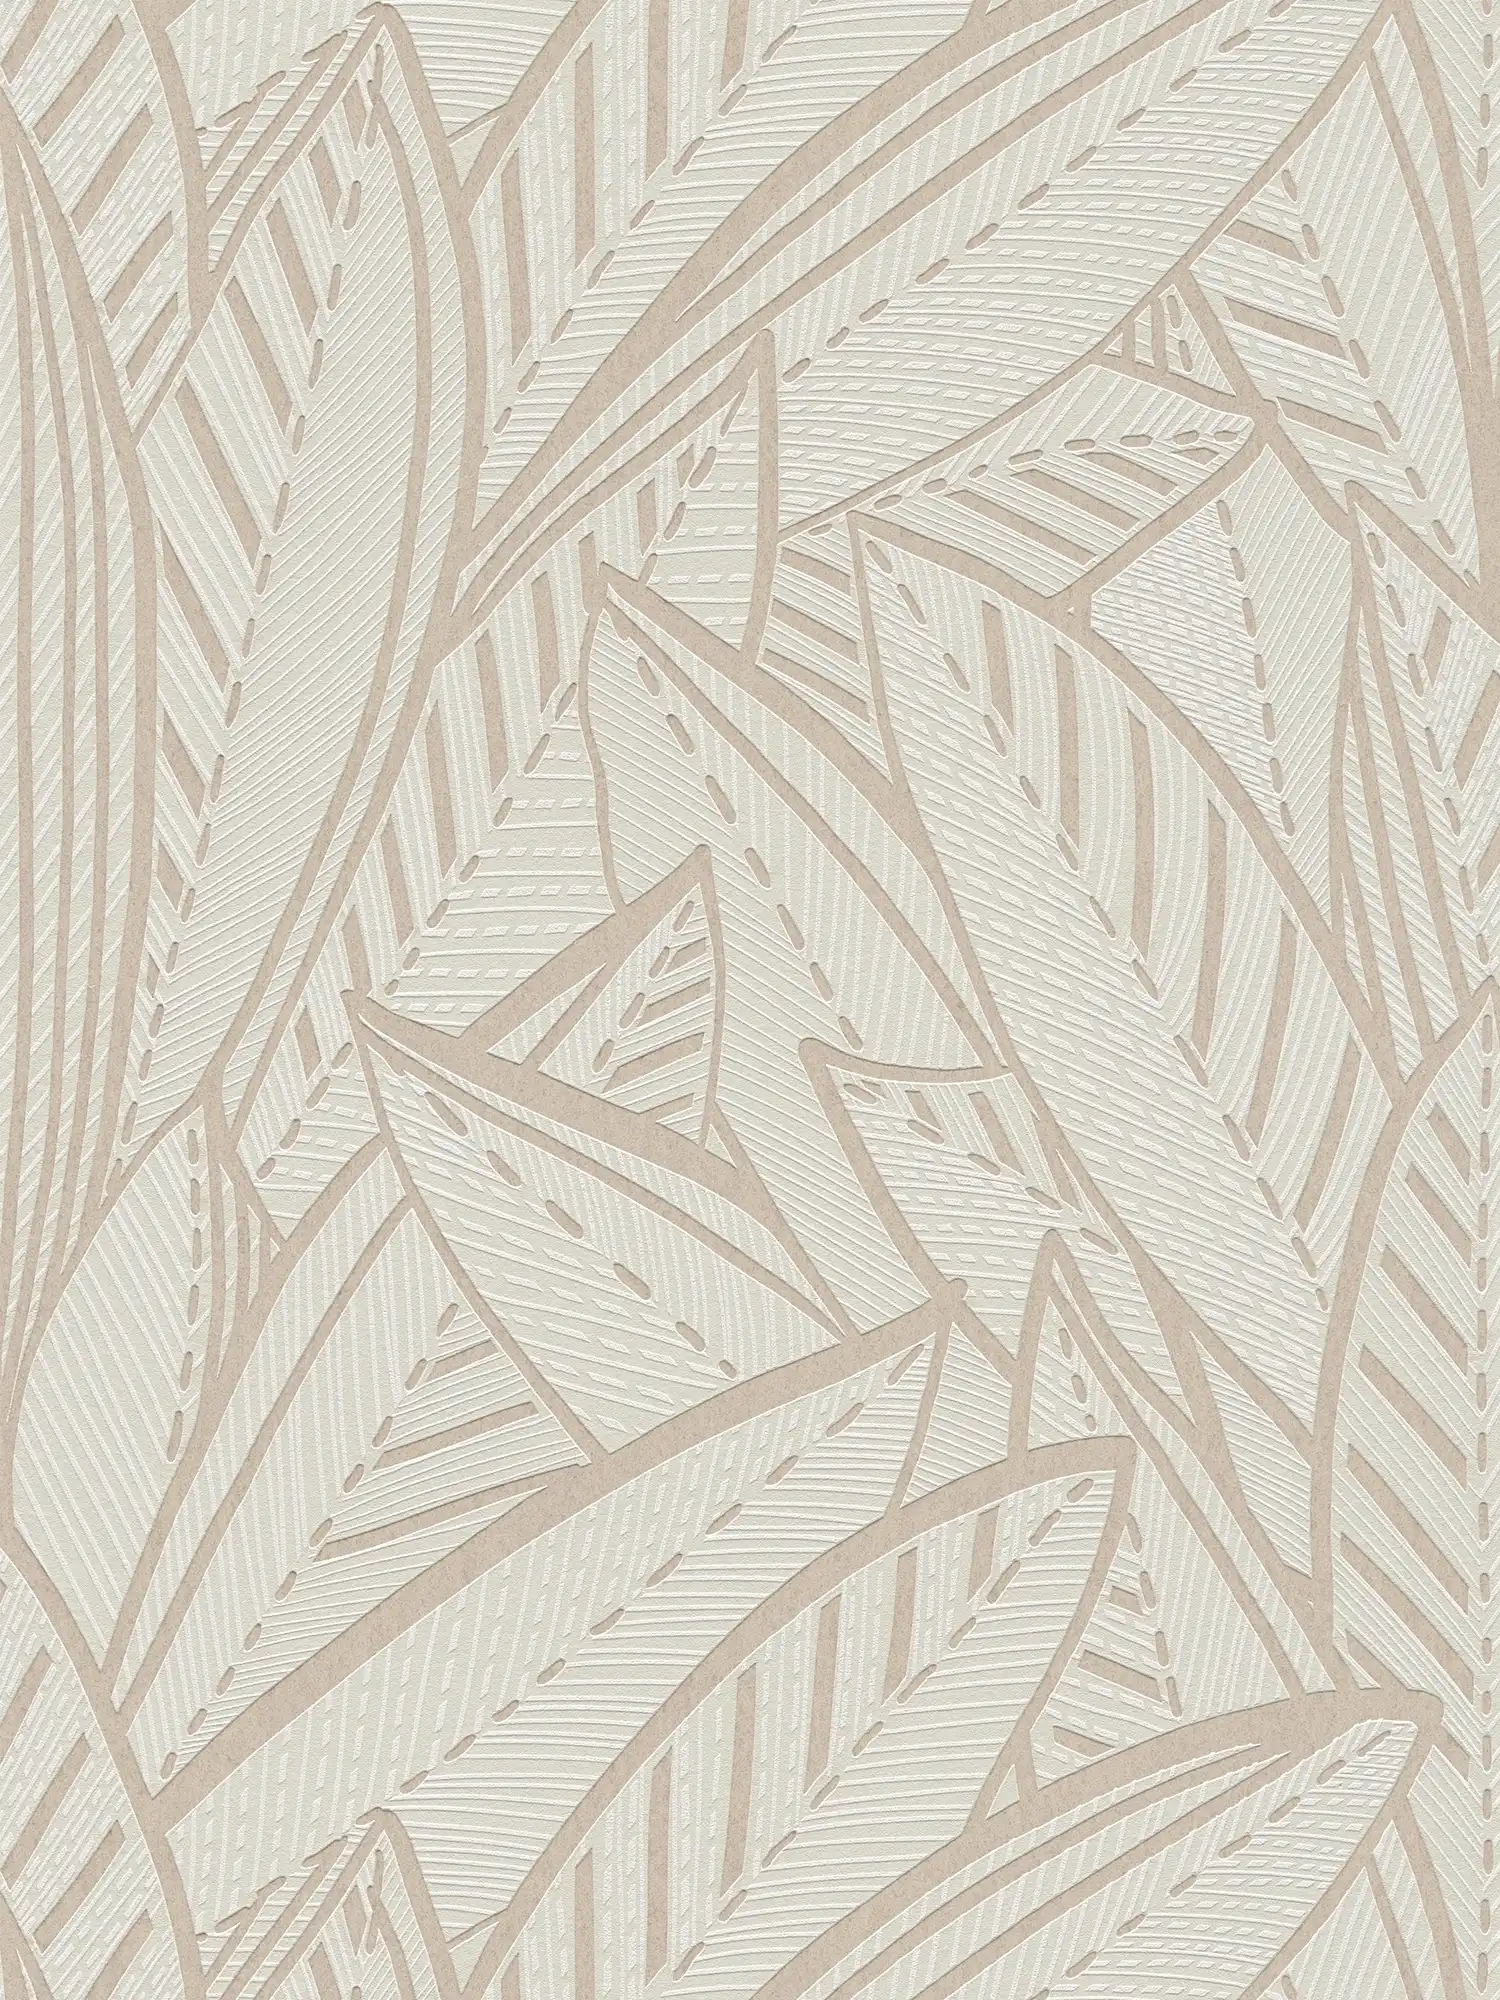 Papel pintado tejido-no tejido jungla con hojas de palmera y ligeros efectos brillantes - blanco, gris
